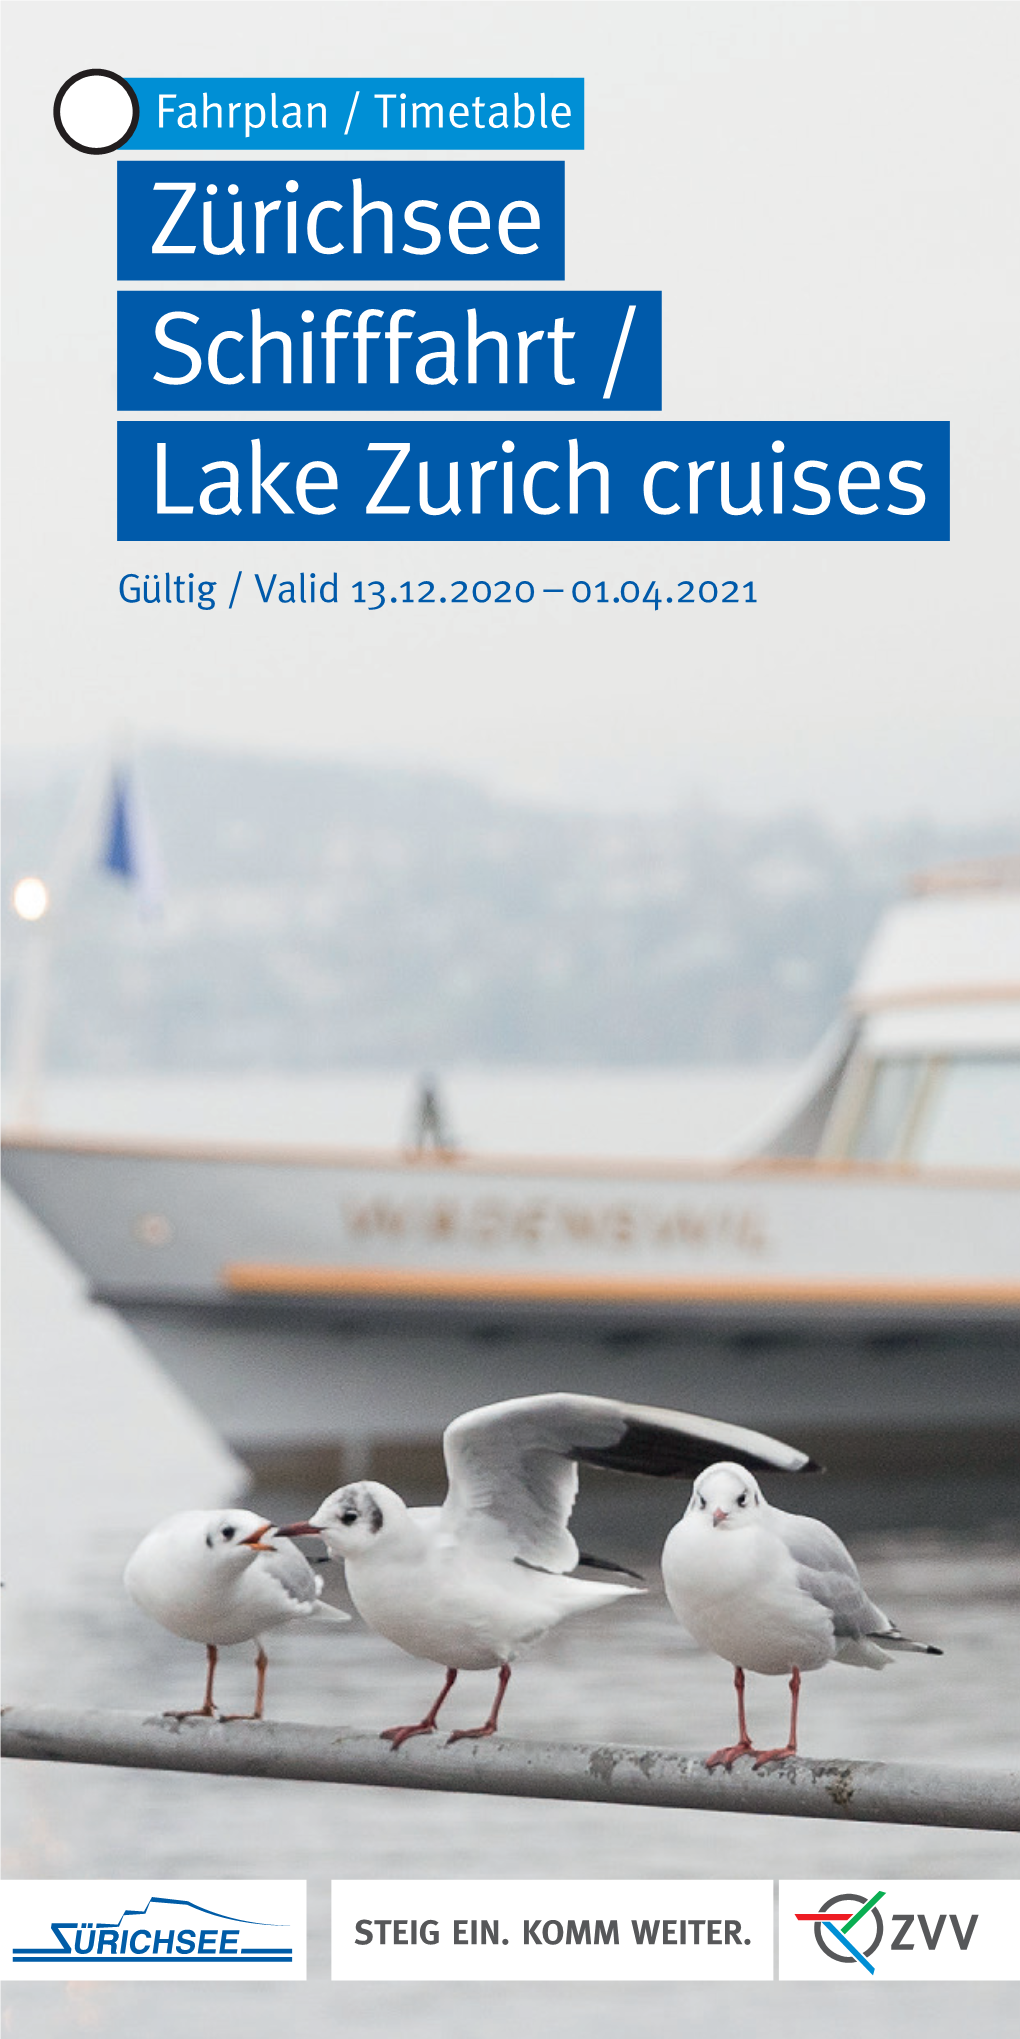 Zürichsee Schifffahrt / Lake Zurich Cruises Gültig / Valid 13.12.2020 – 01.04.2021 AB ZÜRICH from ZURICH WINTER WINTER 13.12.2020 – 01.04.2021